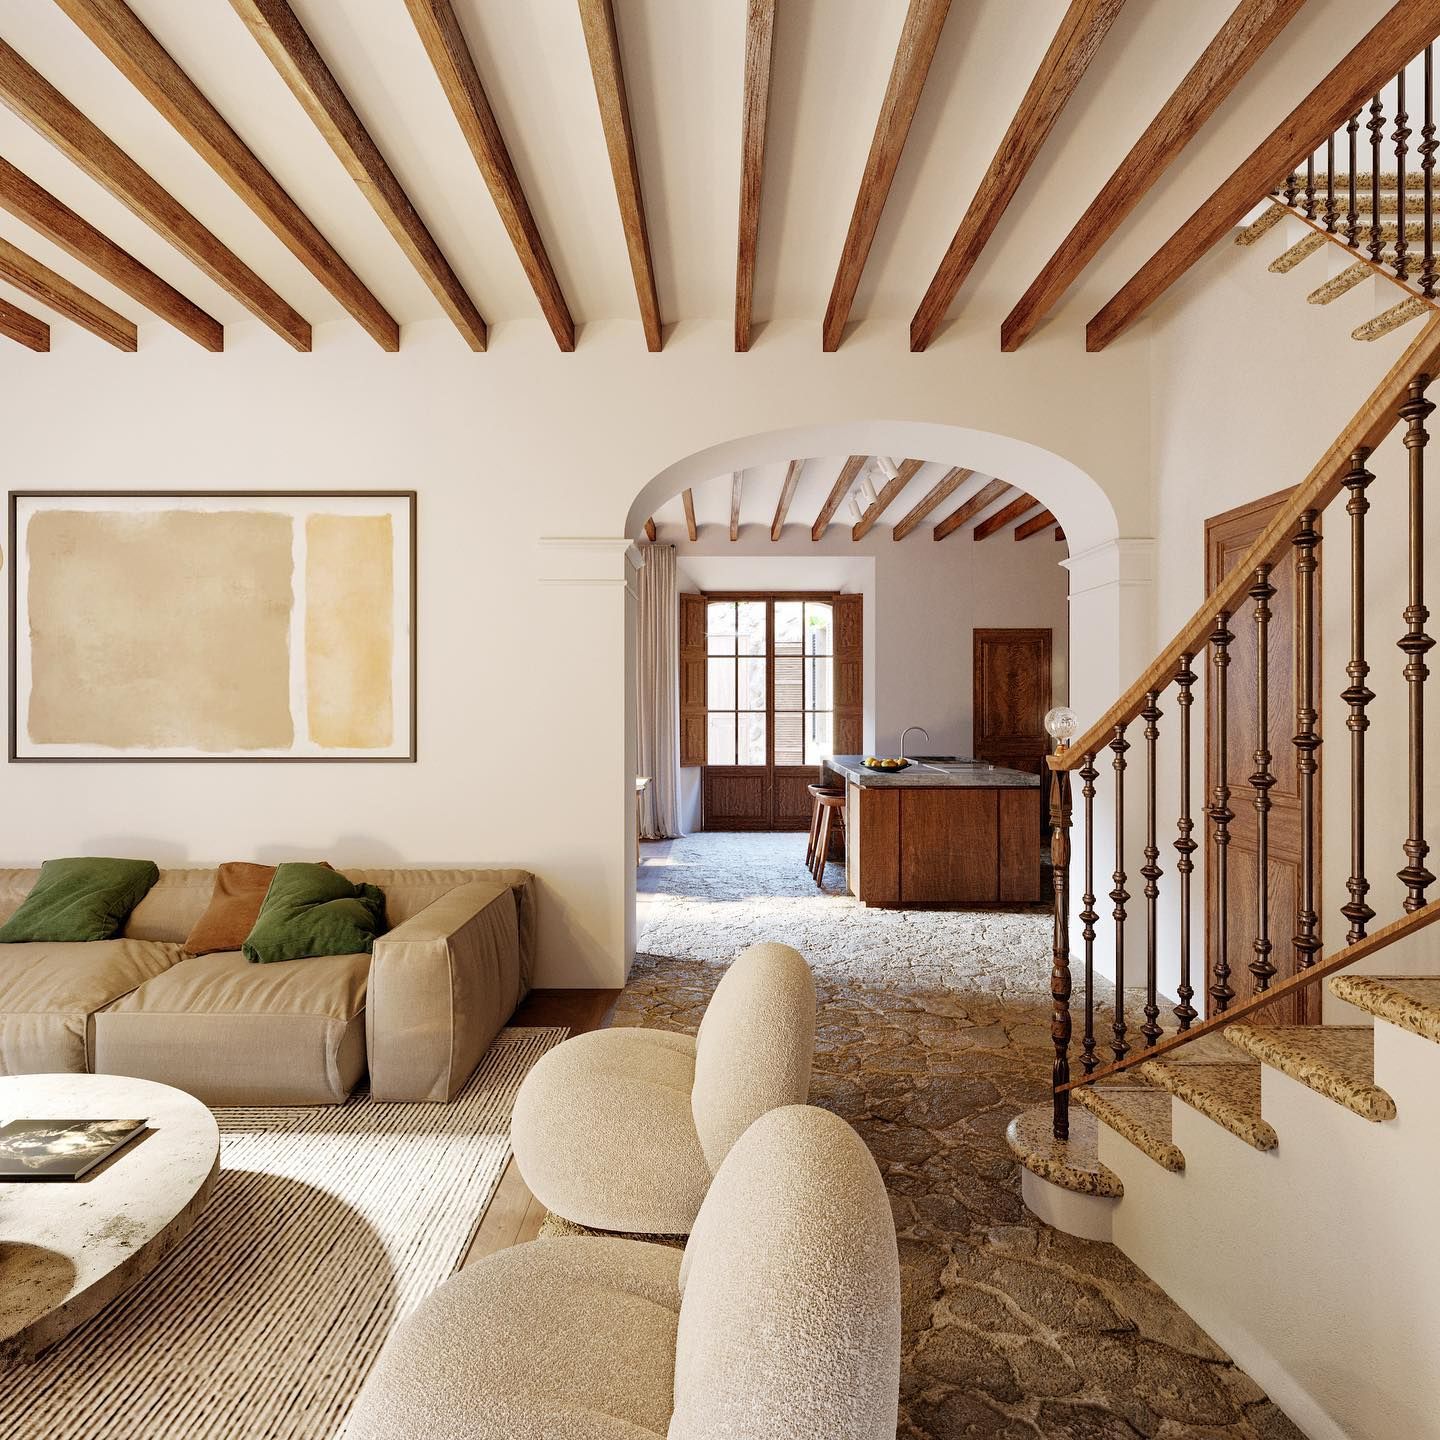 Mallorca House With Open Interiors Stunning Open Interiors in a Mallorca Home